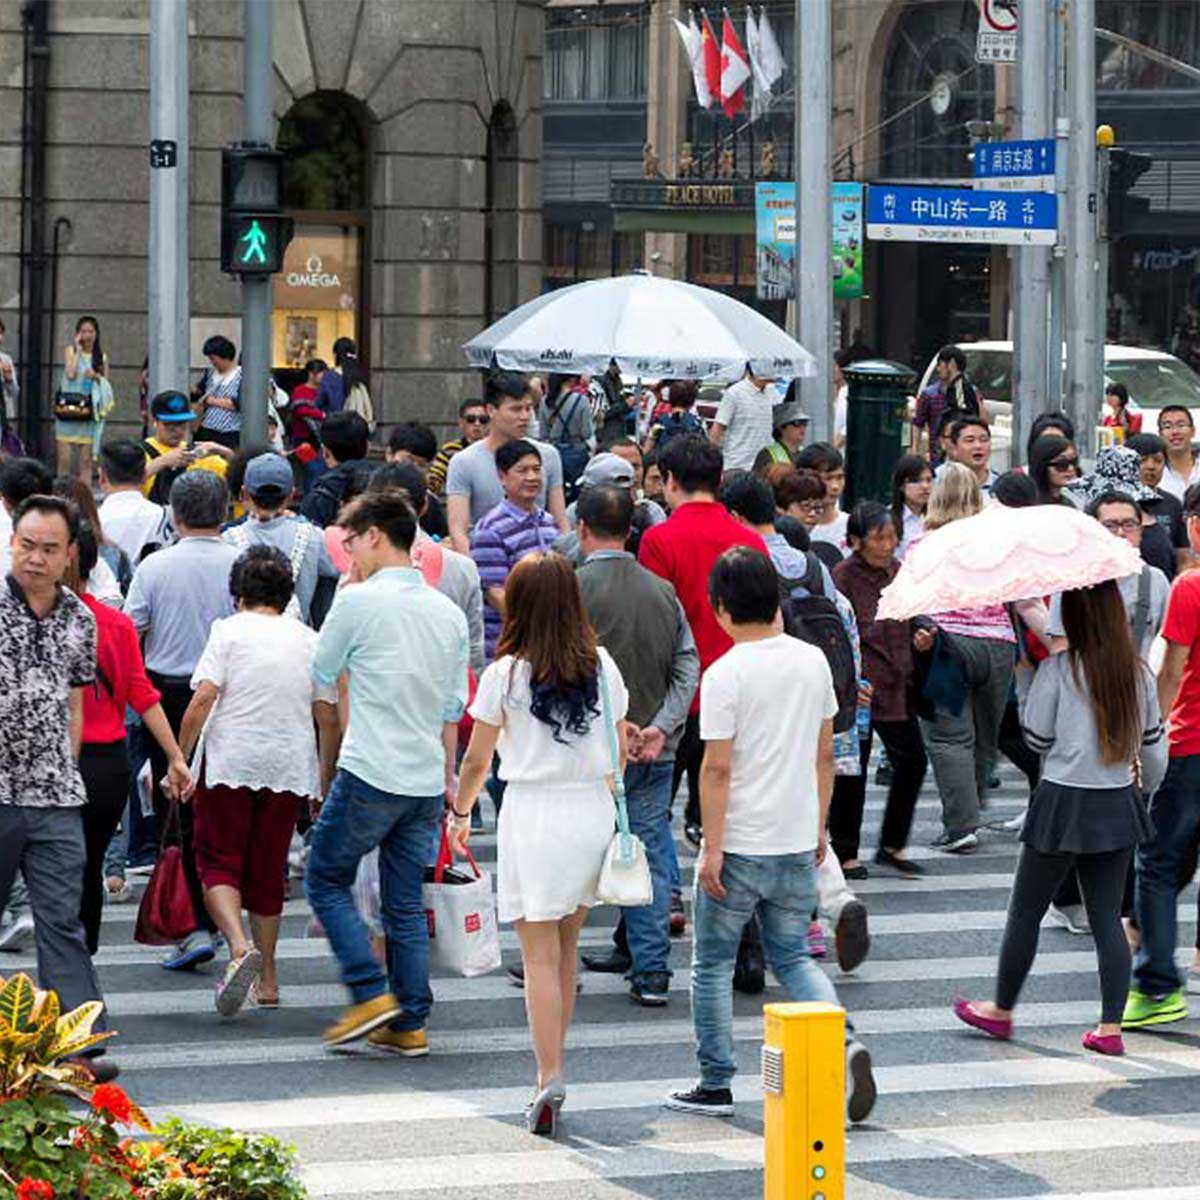 Foule de personne dans une rue en Chine